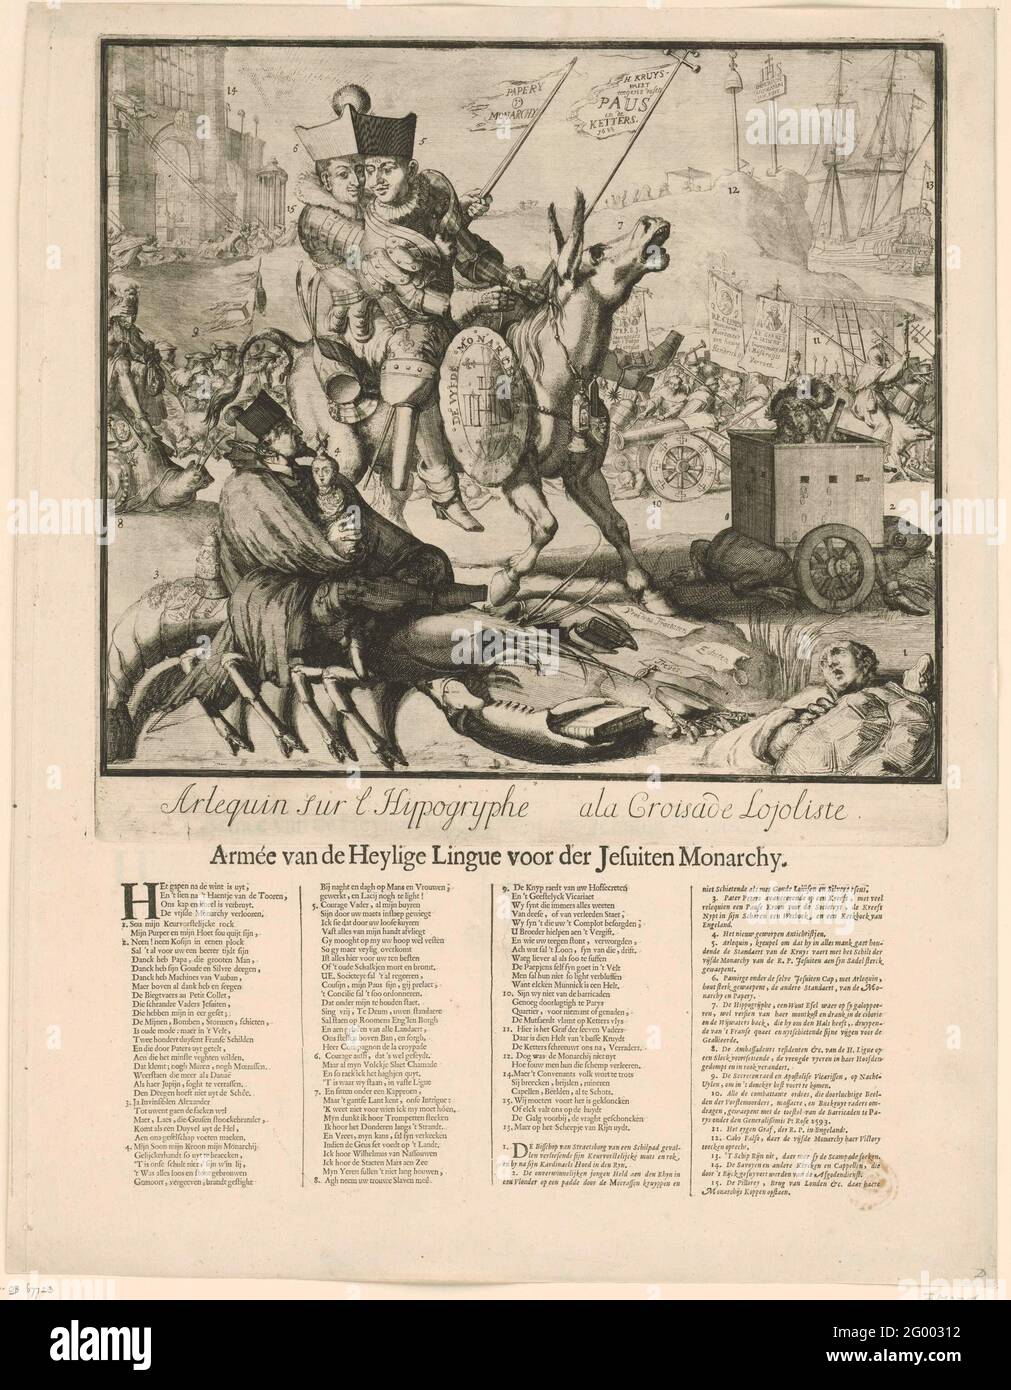 Dibujos animados sobre la batalla conjunta de Luis XIV y Jacobus II, 1689;  Arlequin sur l Hippogrypghe Ala Croisade Loujoliste; Armée de la Lingue  Heyly para la Monarquía Jesuita; Cartoon en Jacobus